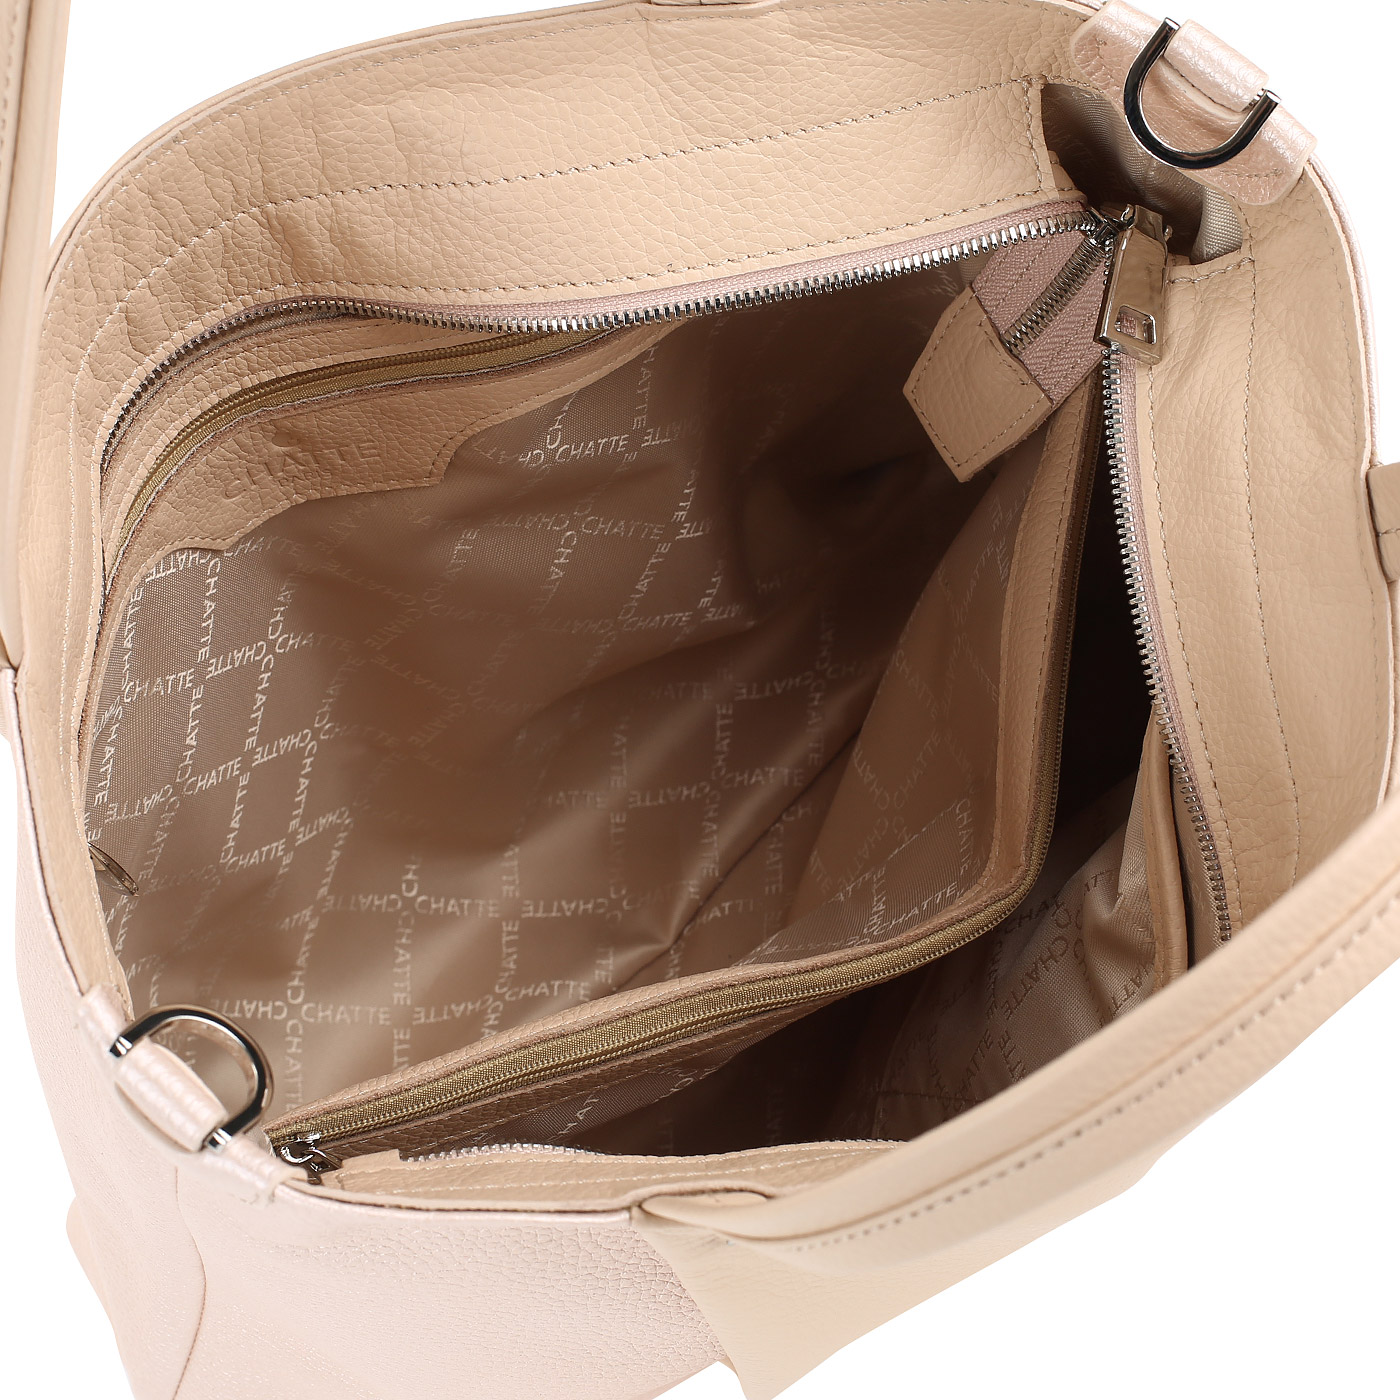 Вместительная женская сумка из кожи Chatte 